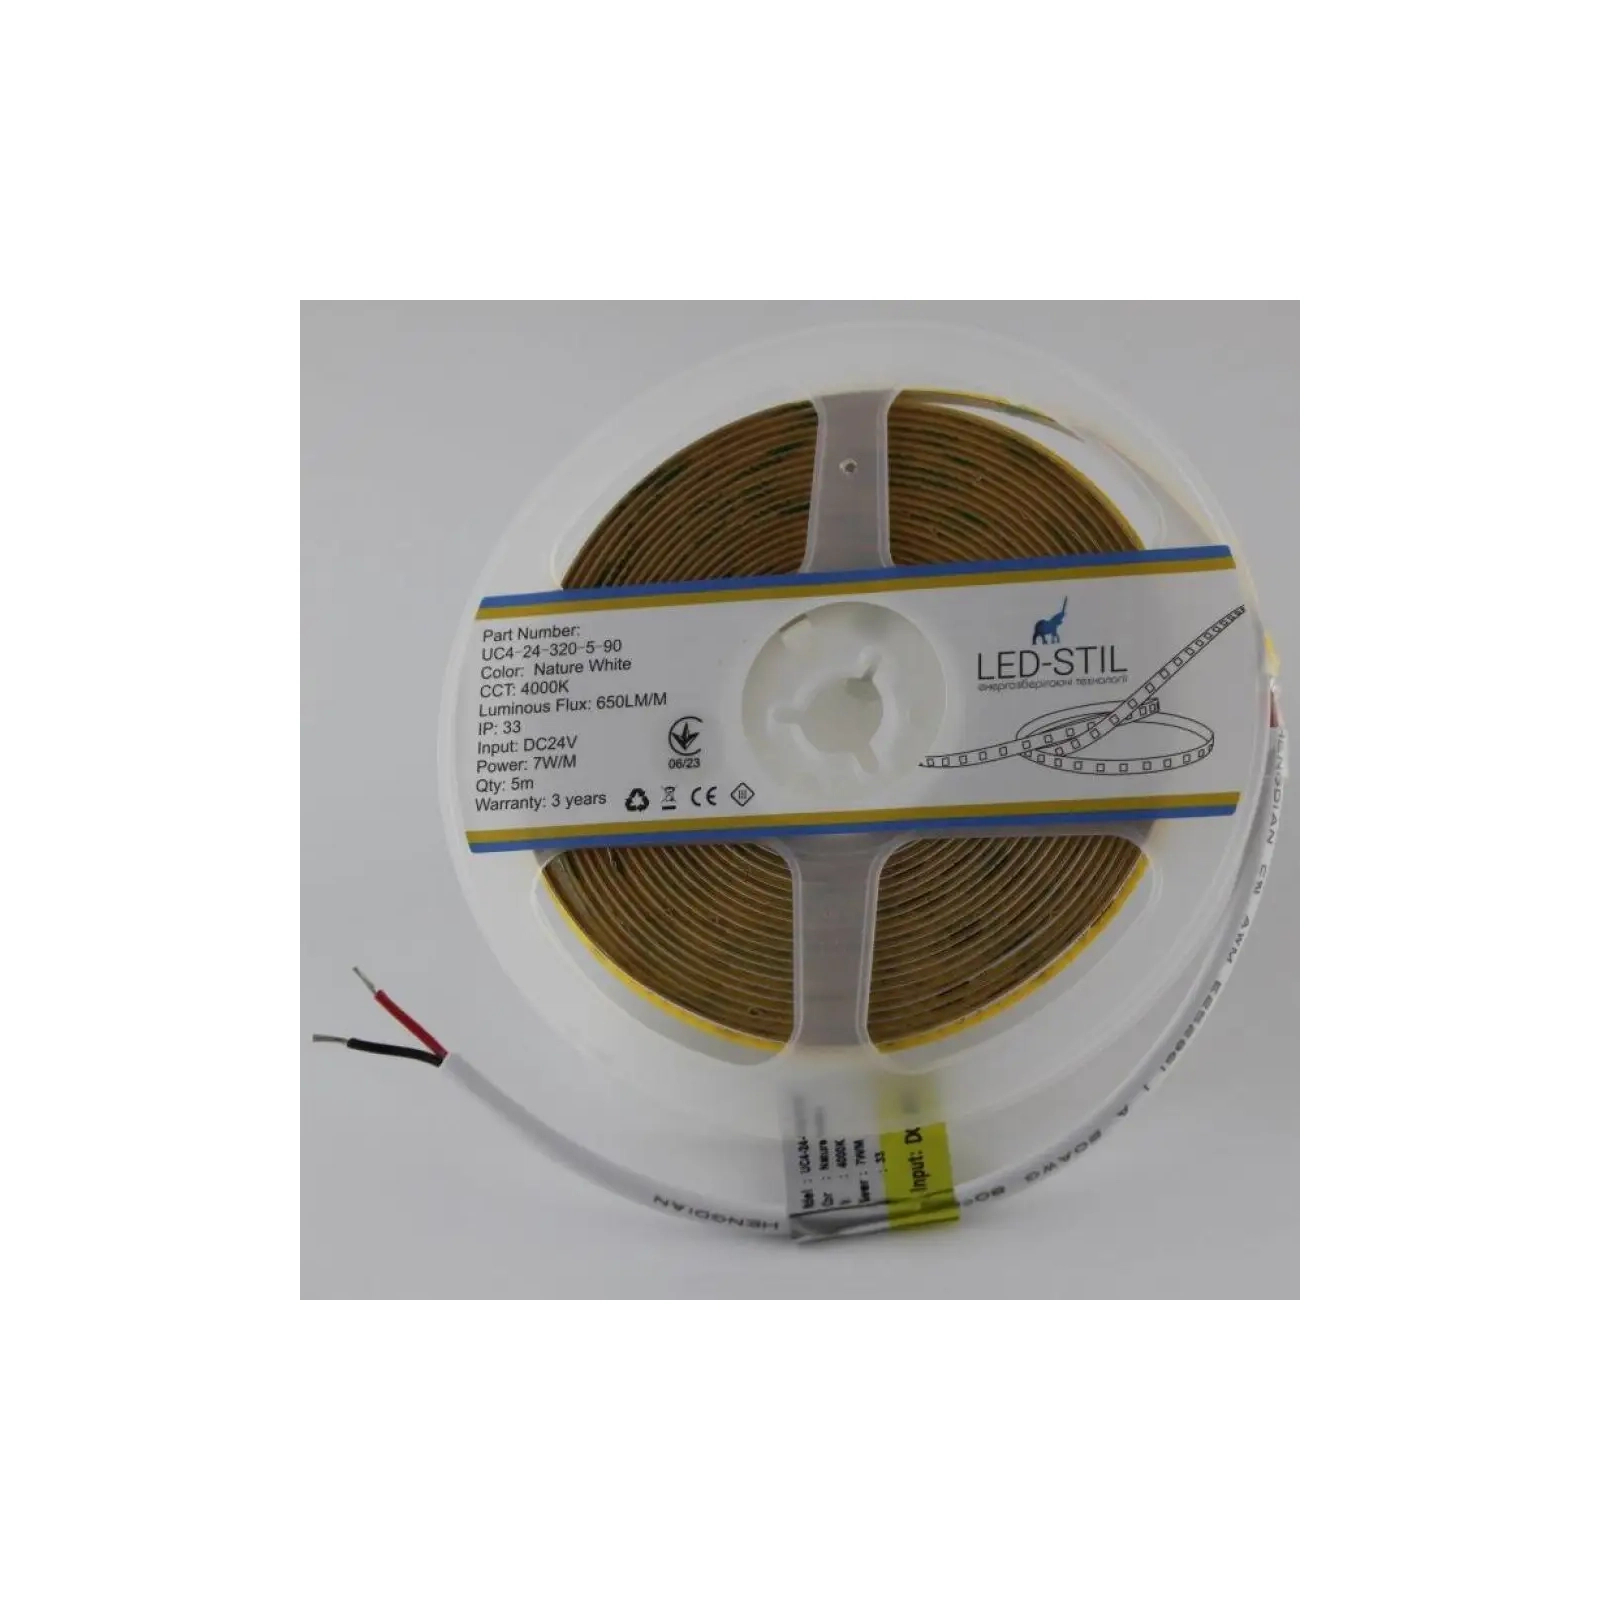 Светодиодная лента LED-STIL 4000K 7 Вт/м COB 320 диодов IP33 24 Вольта 650 lm нейтральный свет, узкий (UC4-24-320-5-90) изображение 4